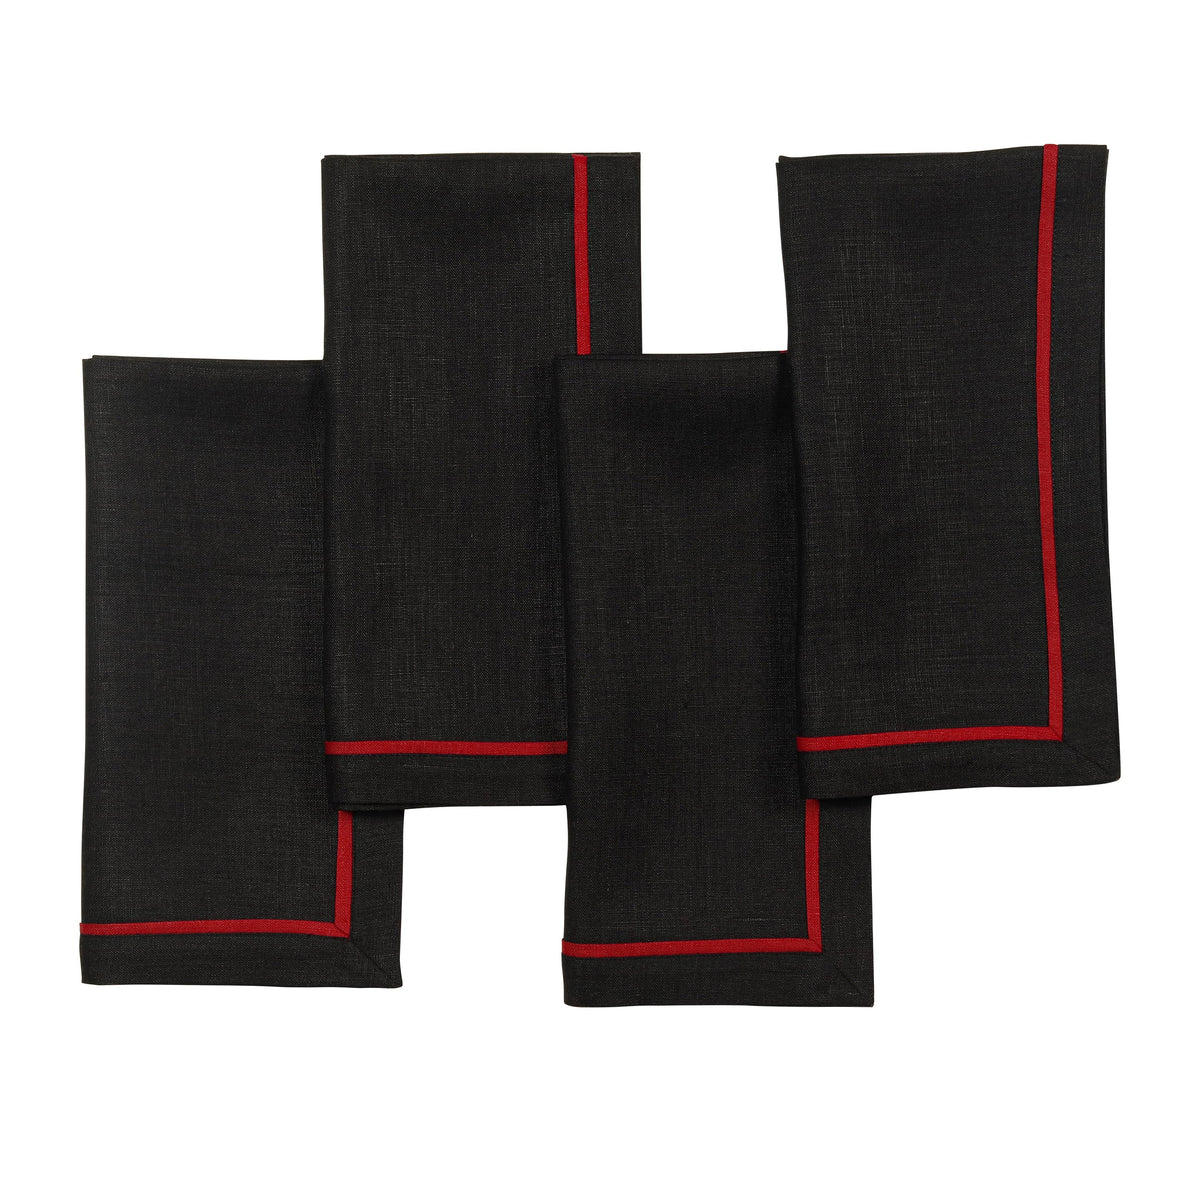 Black & Red Linen Dinner Napkins 20 x 20 Inch Set of 4 - Reversible